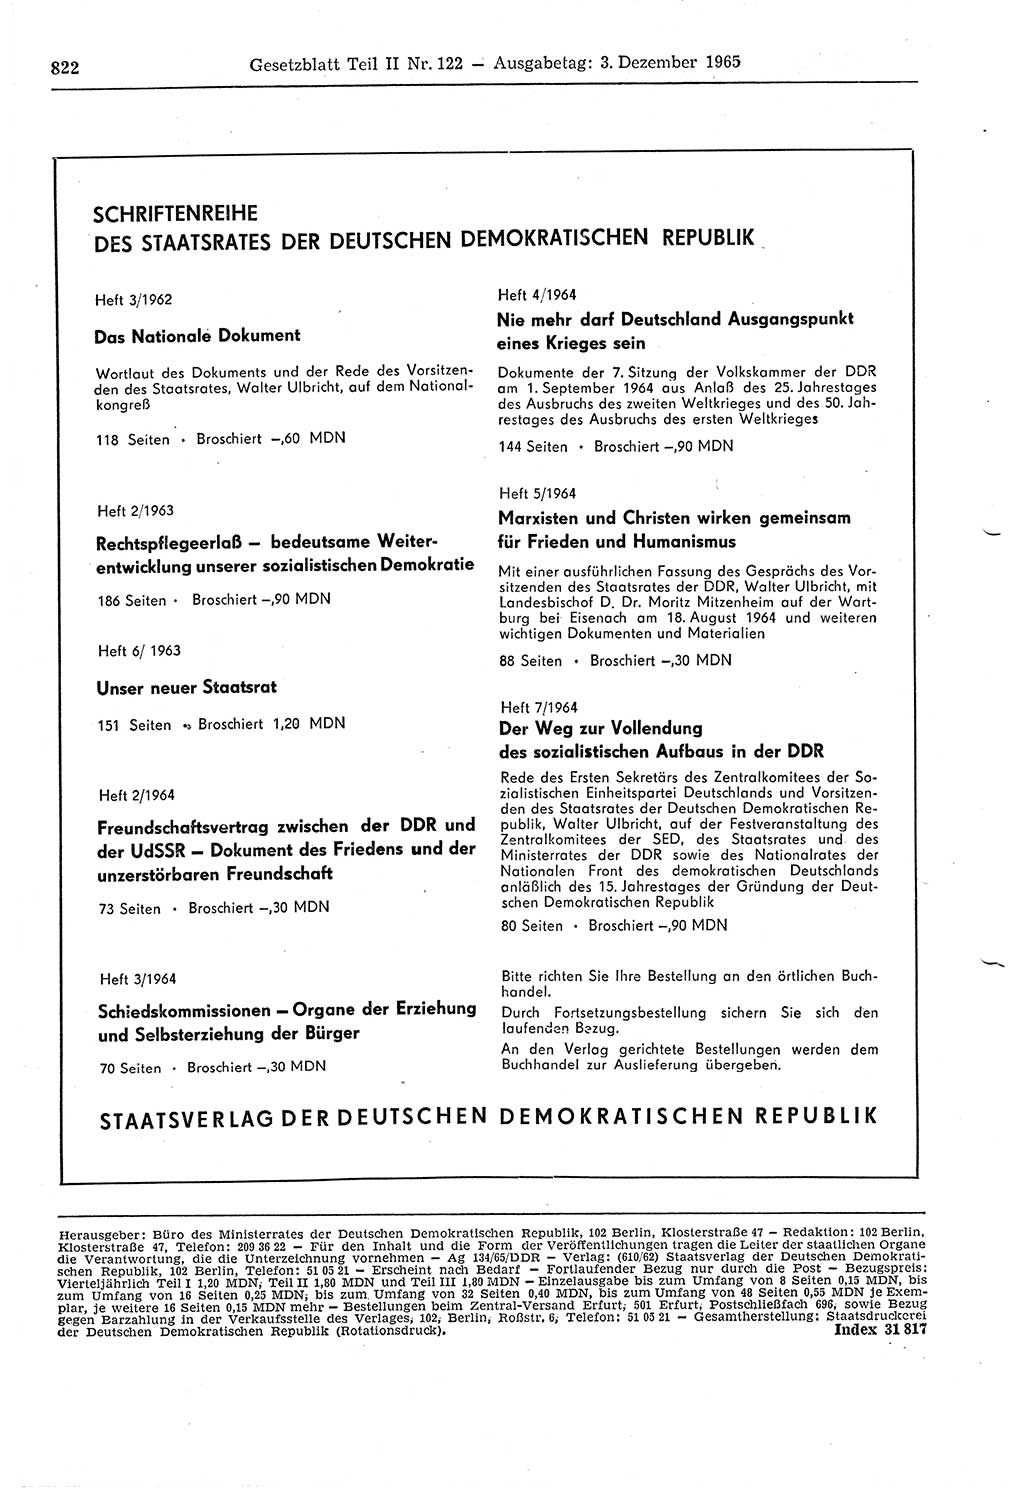 Gesetzblatt (GBl.) der Deutschen Demokratischen Republik (DDR) Teil ⅠⅠ 1965, Seite 822 (GBl. DDR ⅠⅠ 1965, S. 822)